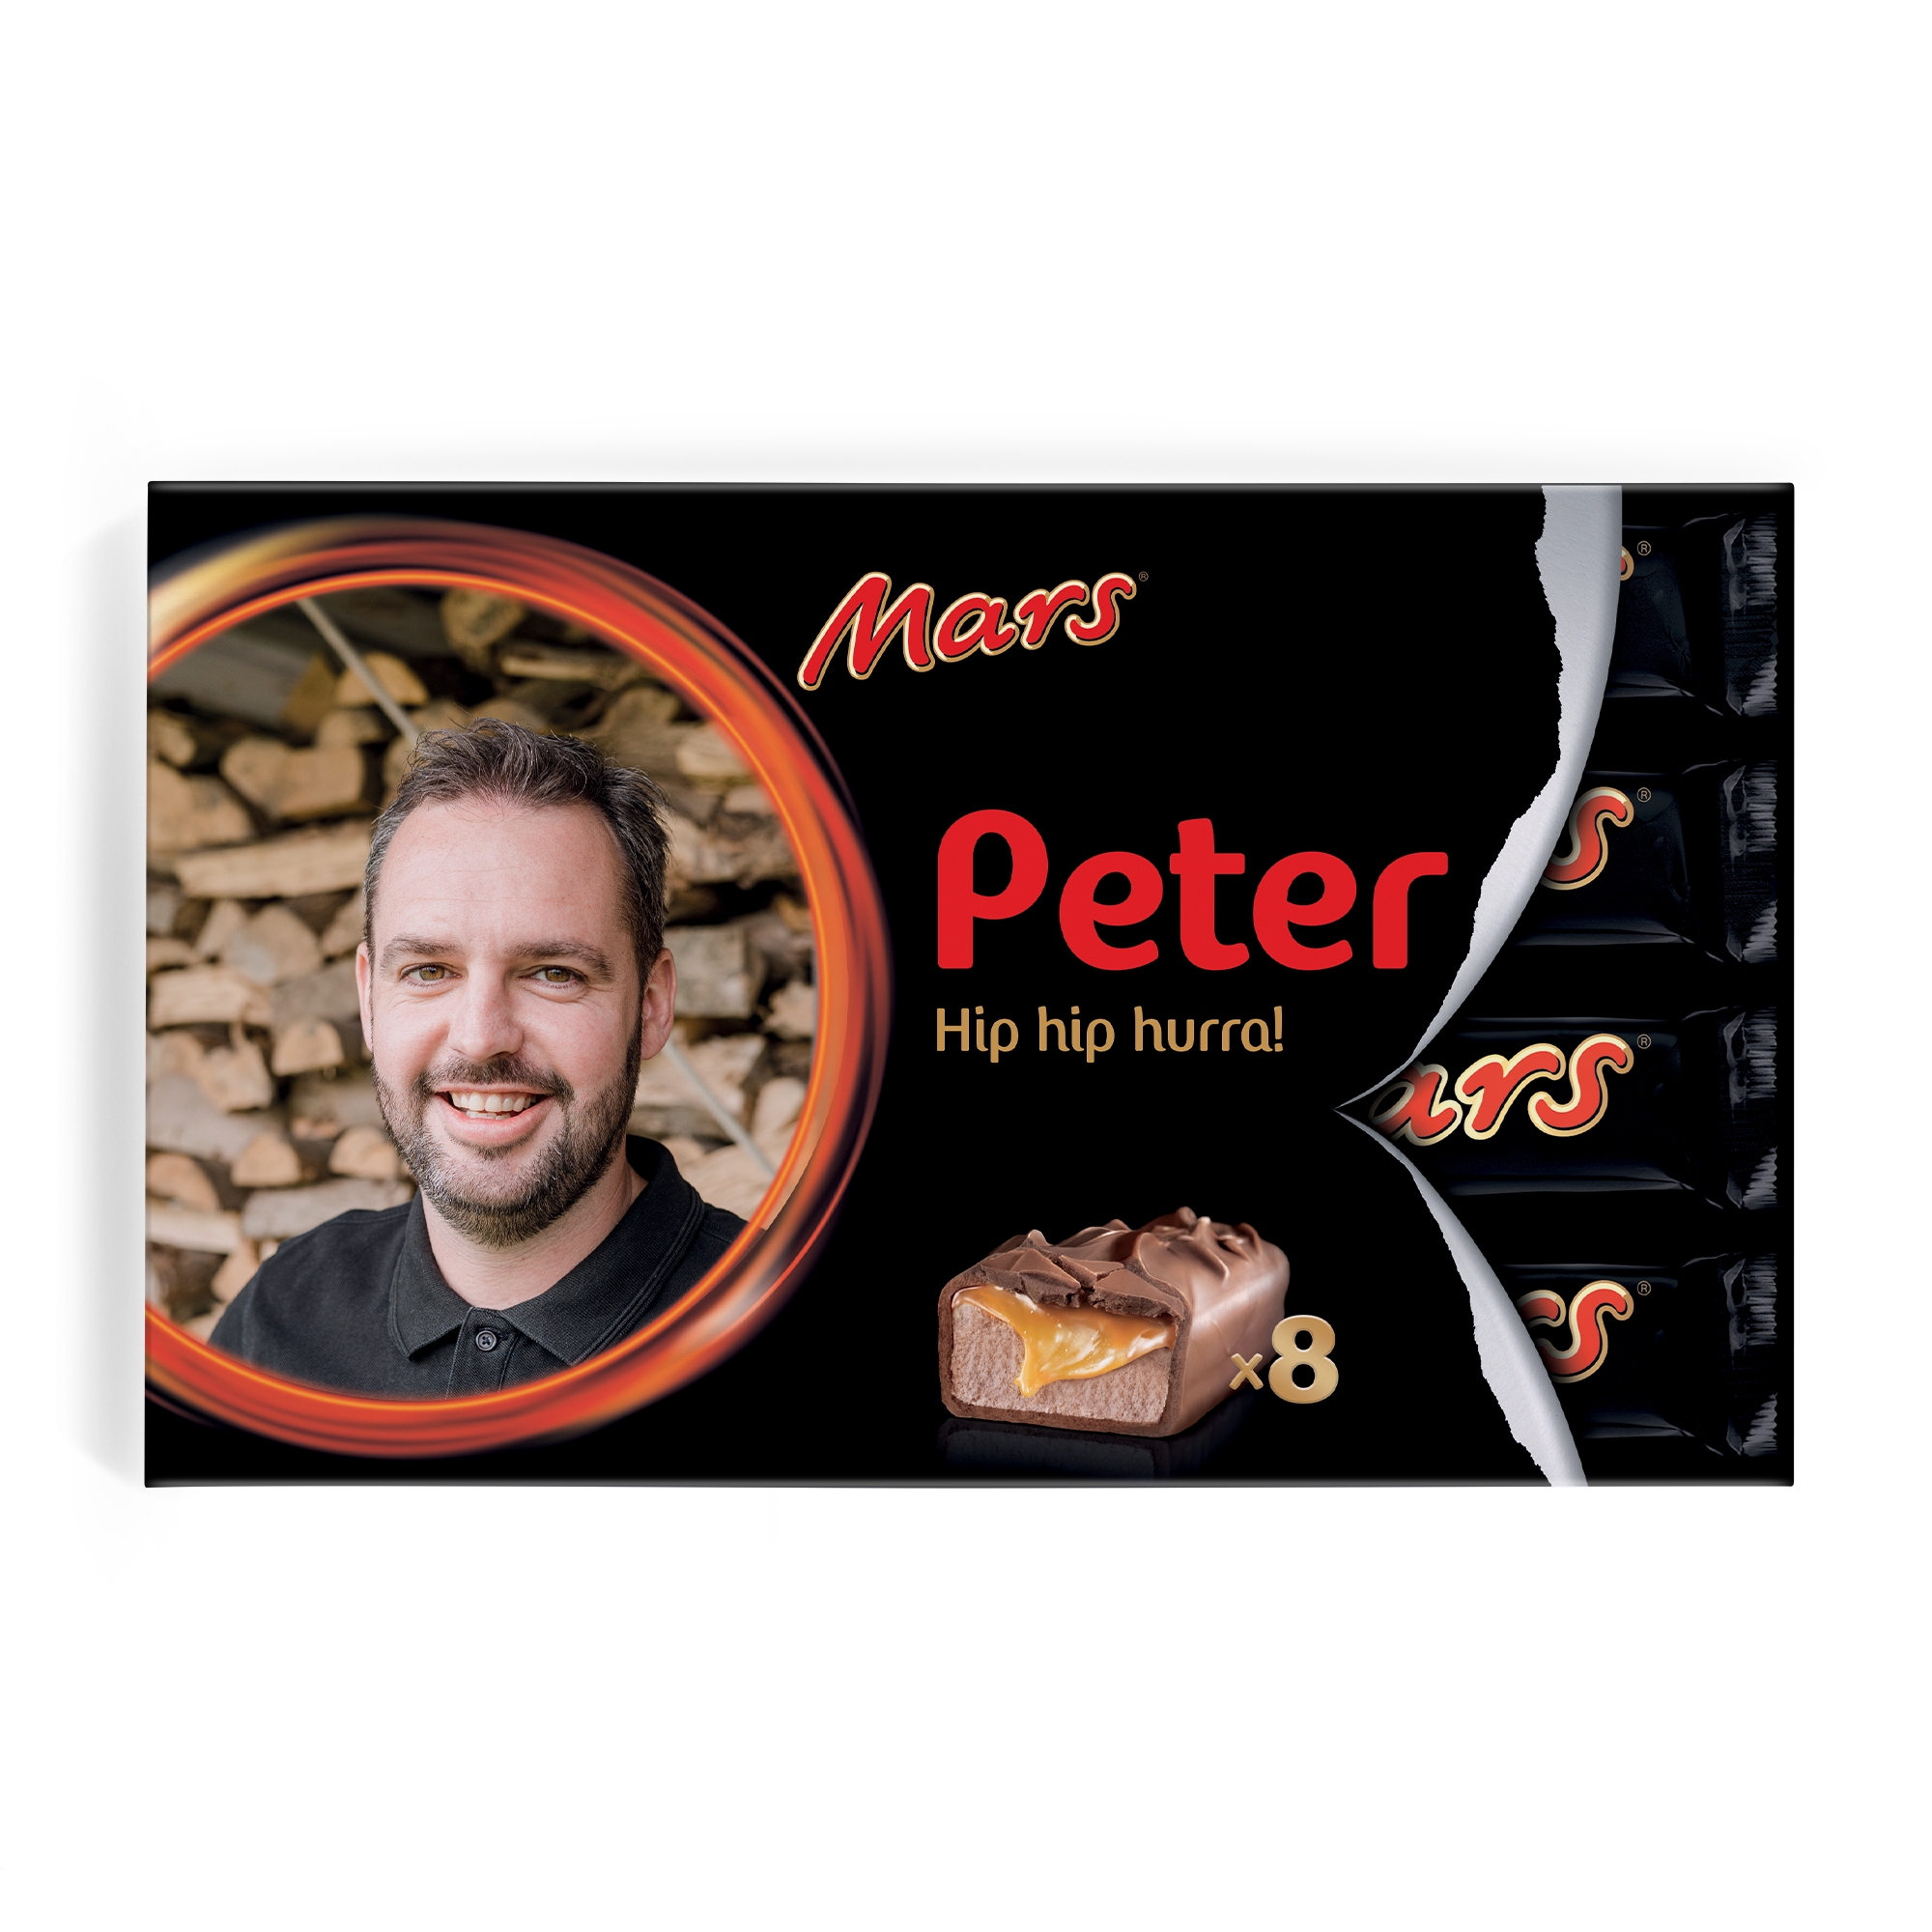 Mars chokoladegave med navn og billede